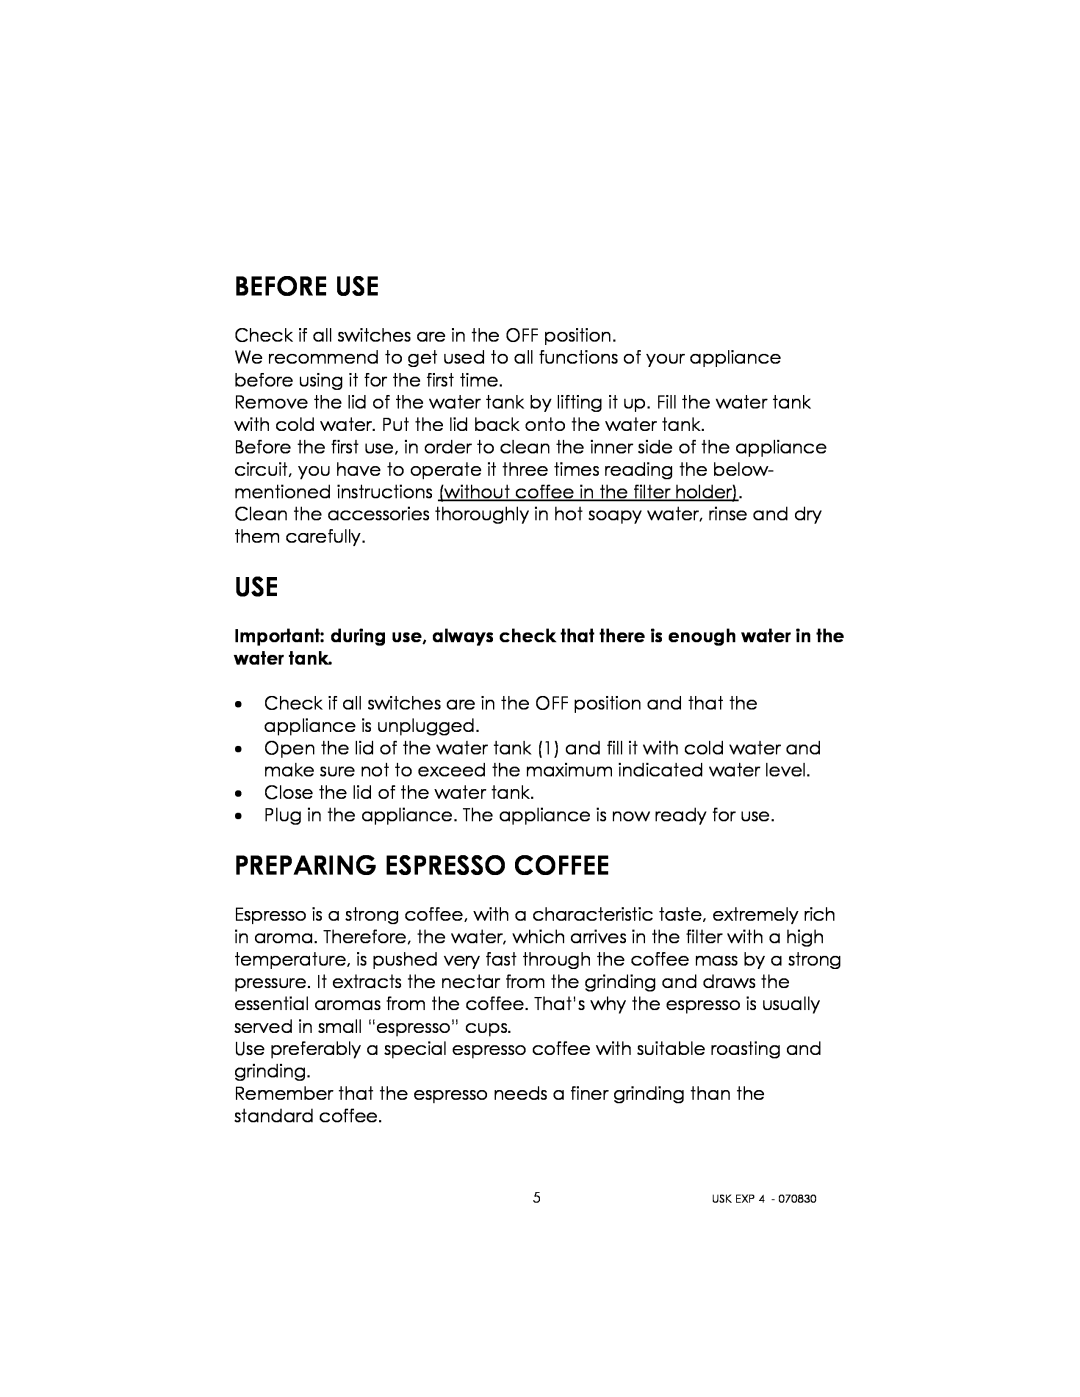 Kalorik USK EXP 4 manual Before Use, Preparing Espresso Coffee 